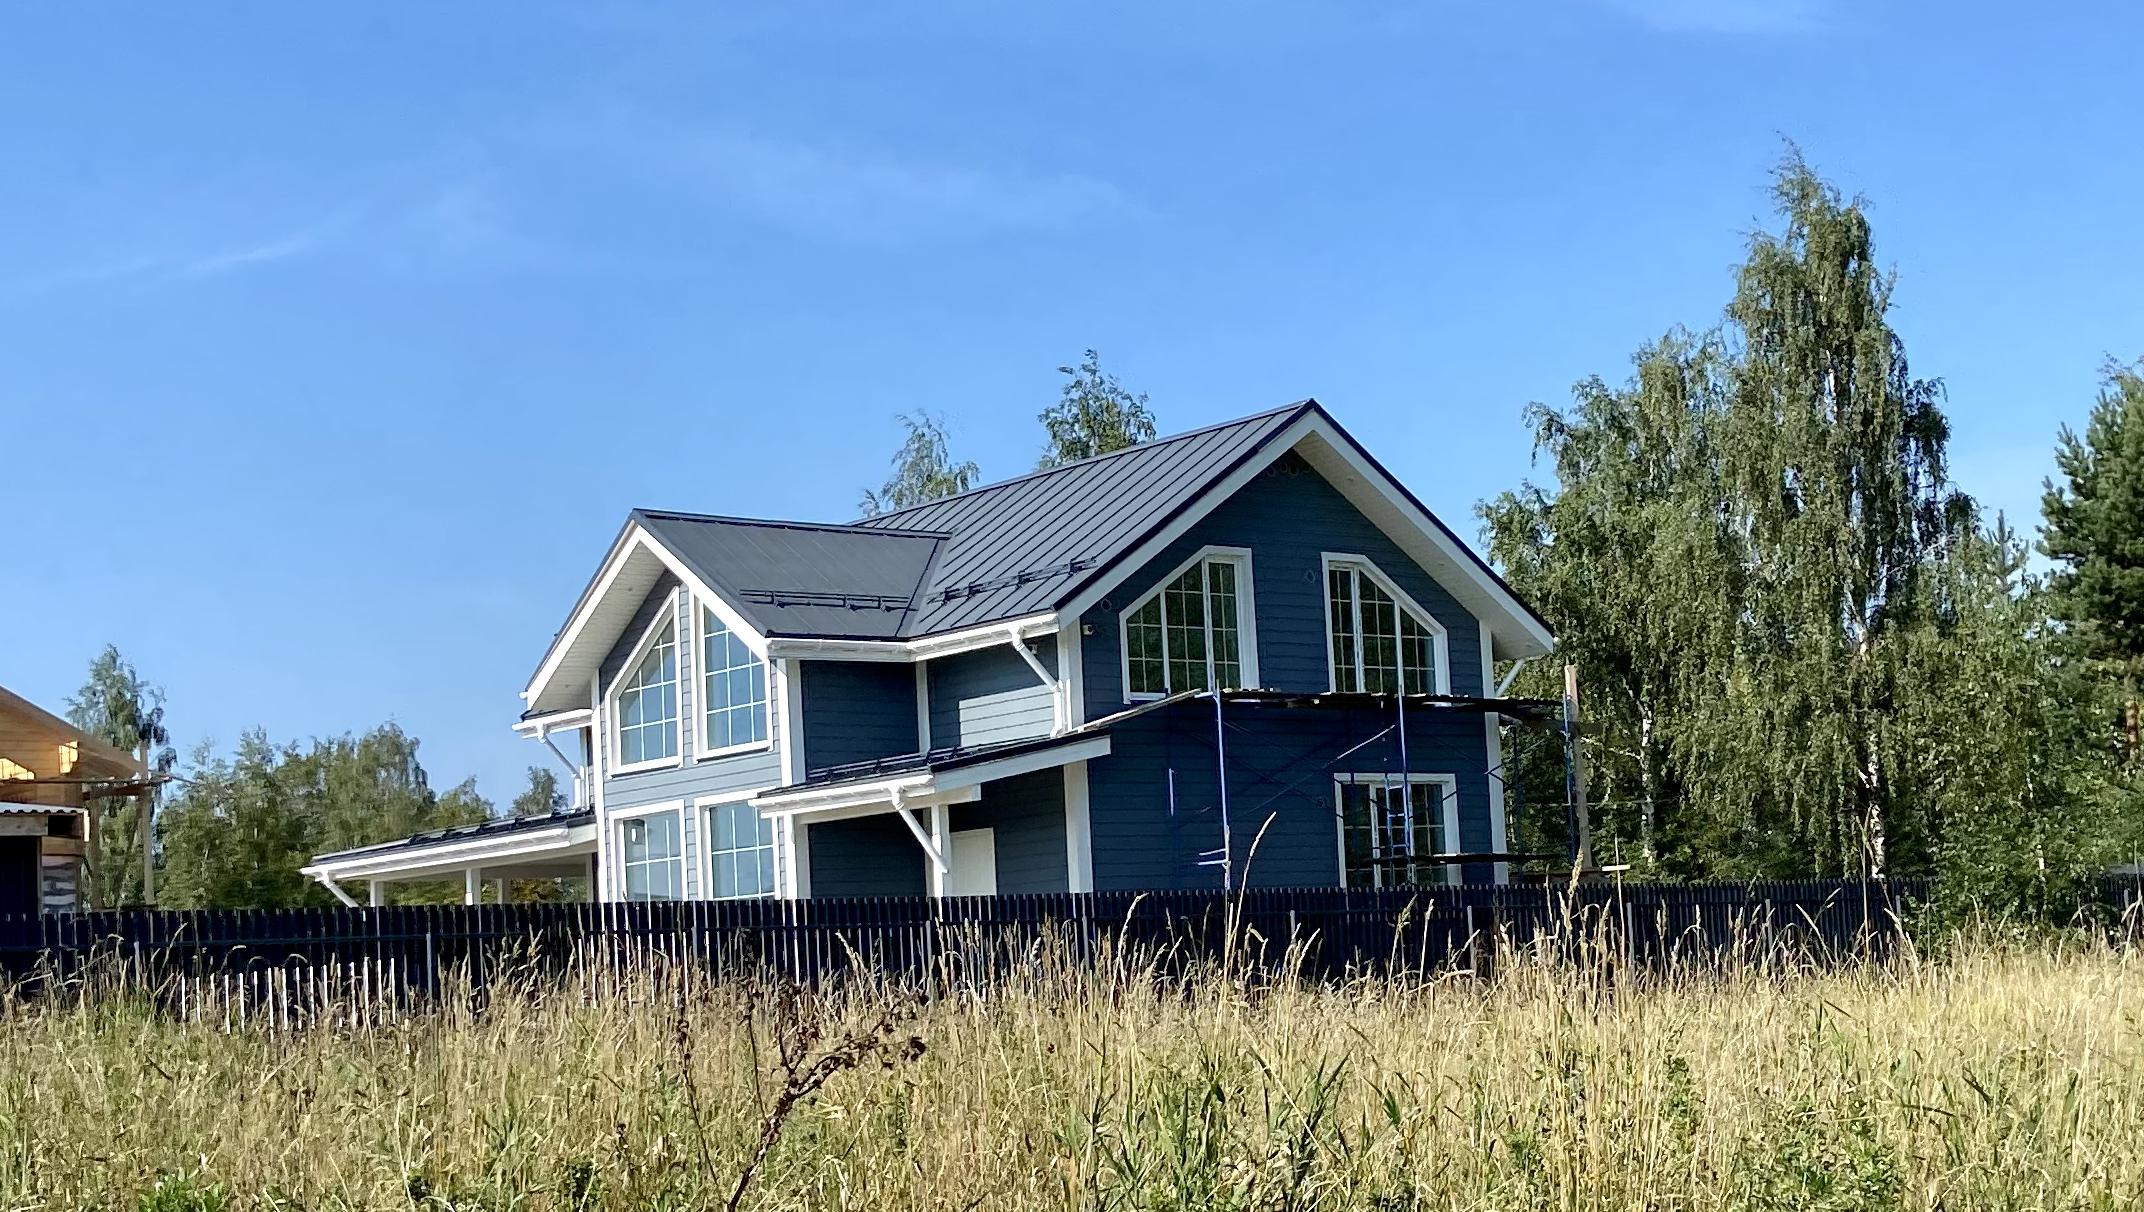 По данным ГК «МАКСИМУМ Life Development», в 2021 году в коттеджных поселках Ленобласти увеличилось число сделок по покупке земельных участков для дальнейшего строительства домов под сдачу в аренду.